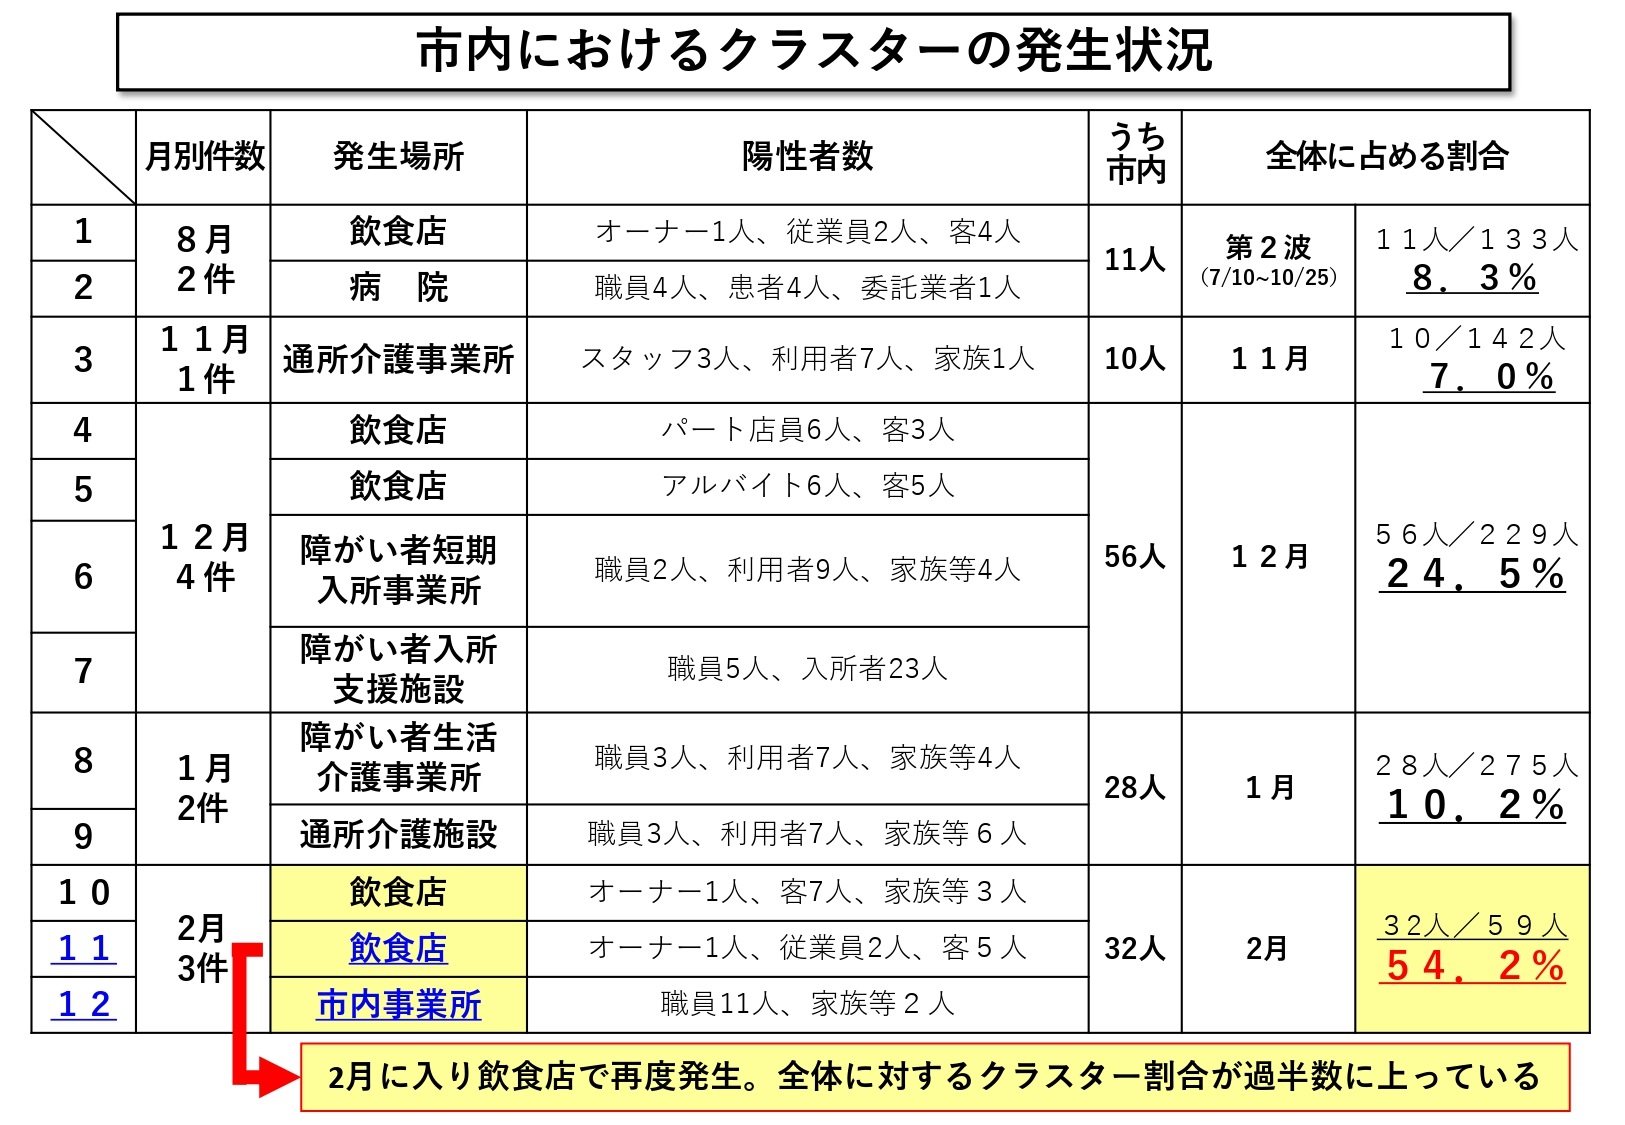 2月15日（月曜日）奈良県における療養者数等の状況